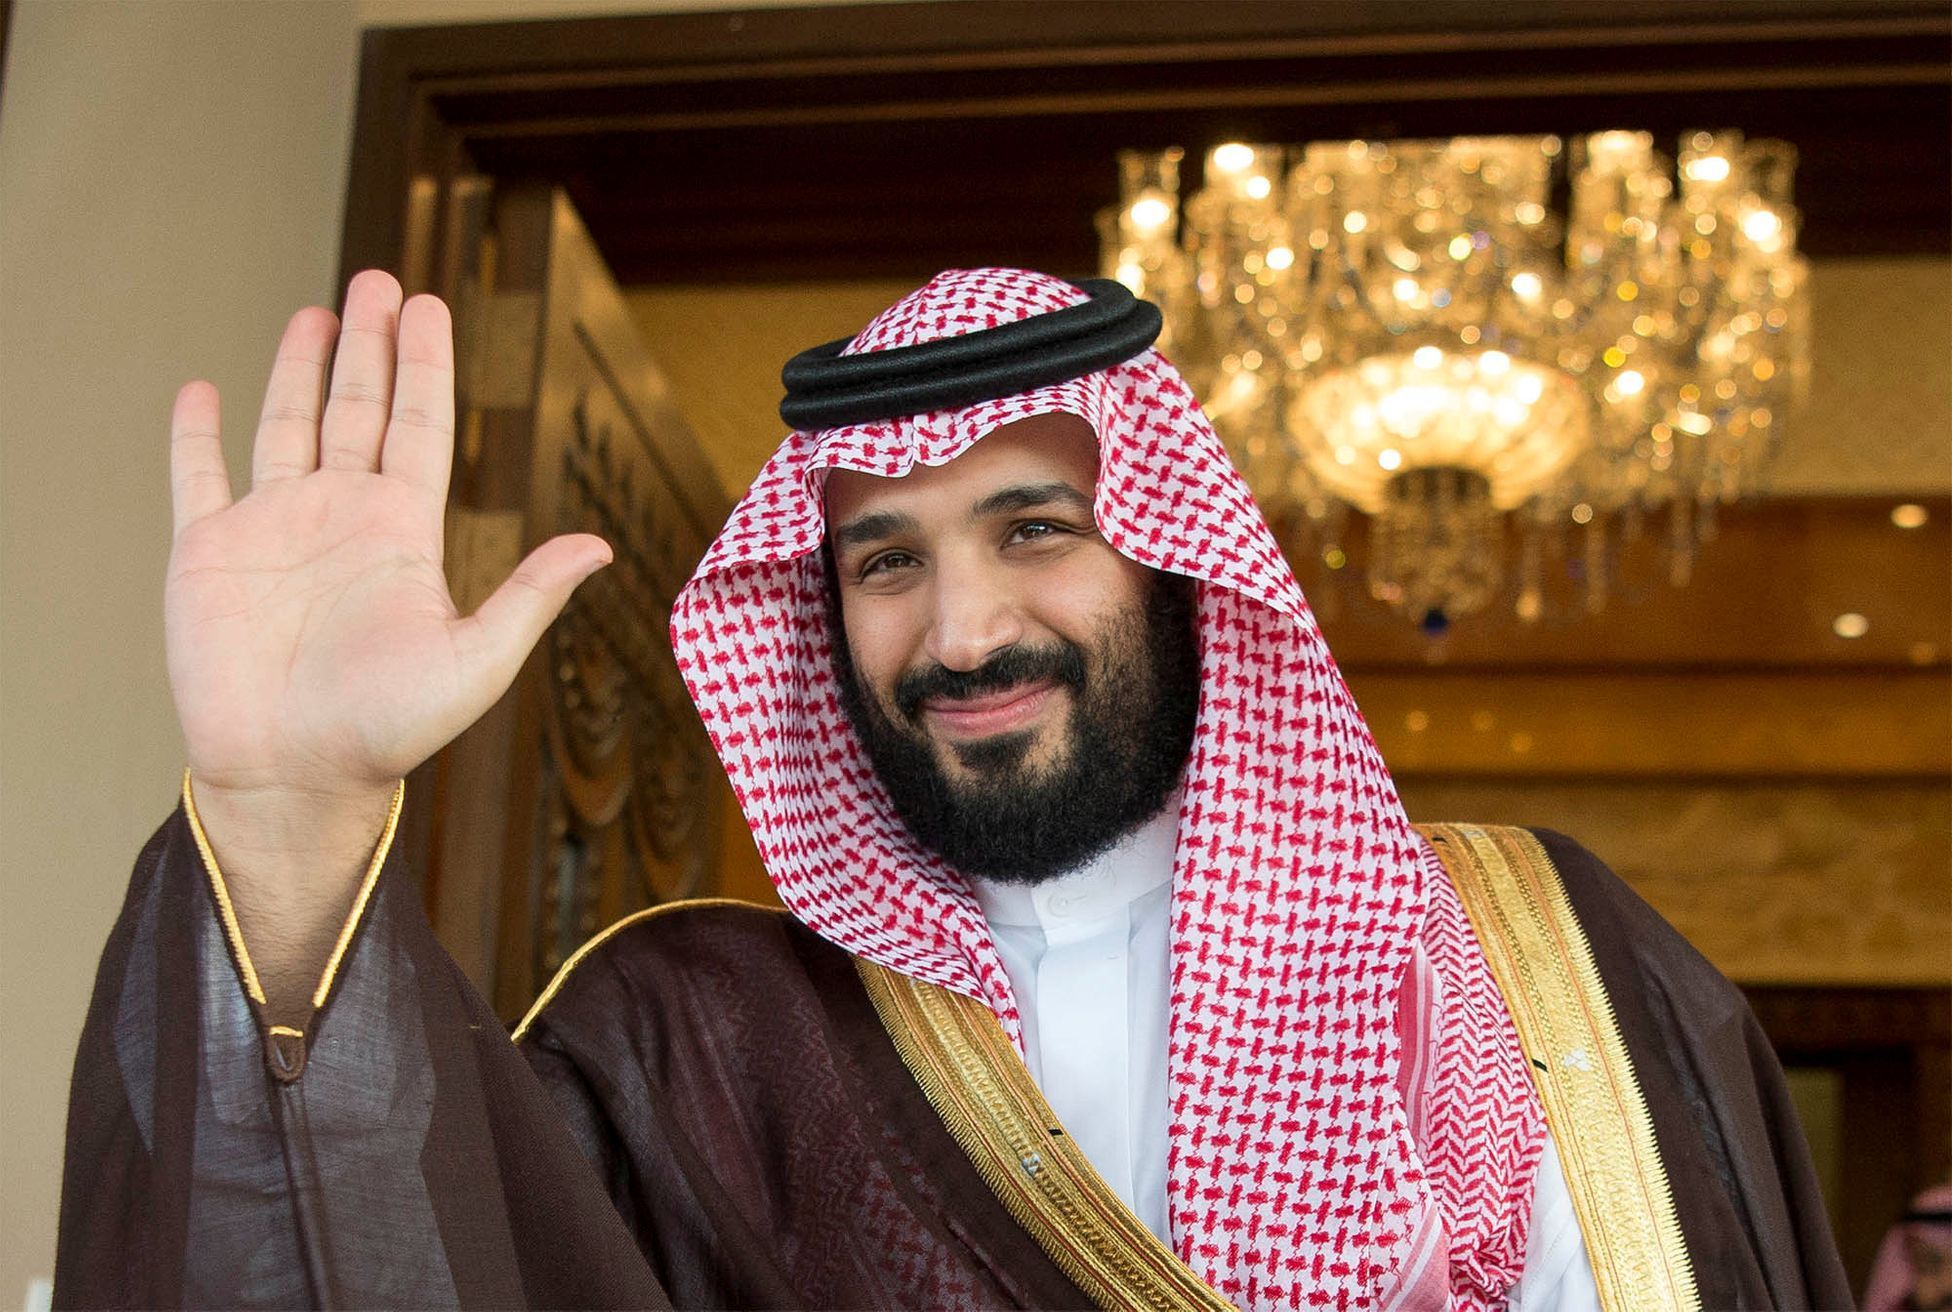 Třiatřicetiletý korunní princ Muhammad bin Salmán je faktickým vládcem Saúdské Arábie, ačkoliv formálně je hlavou státu jeho otec Salmán.